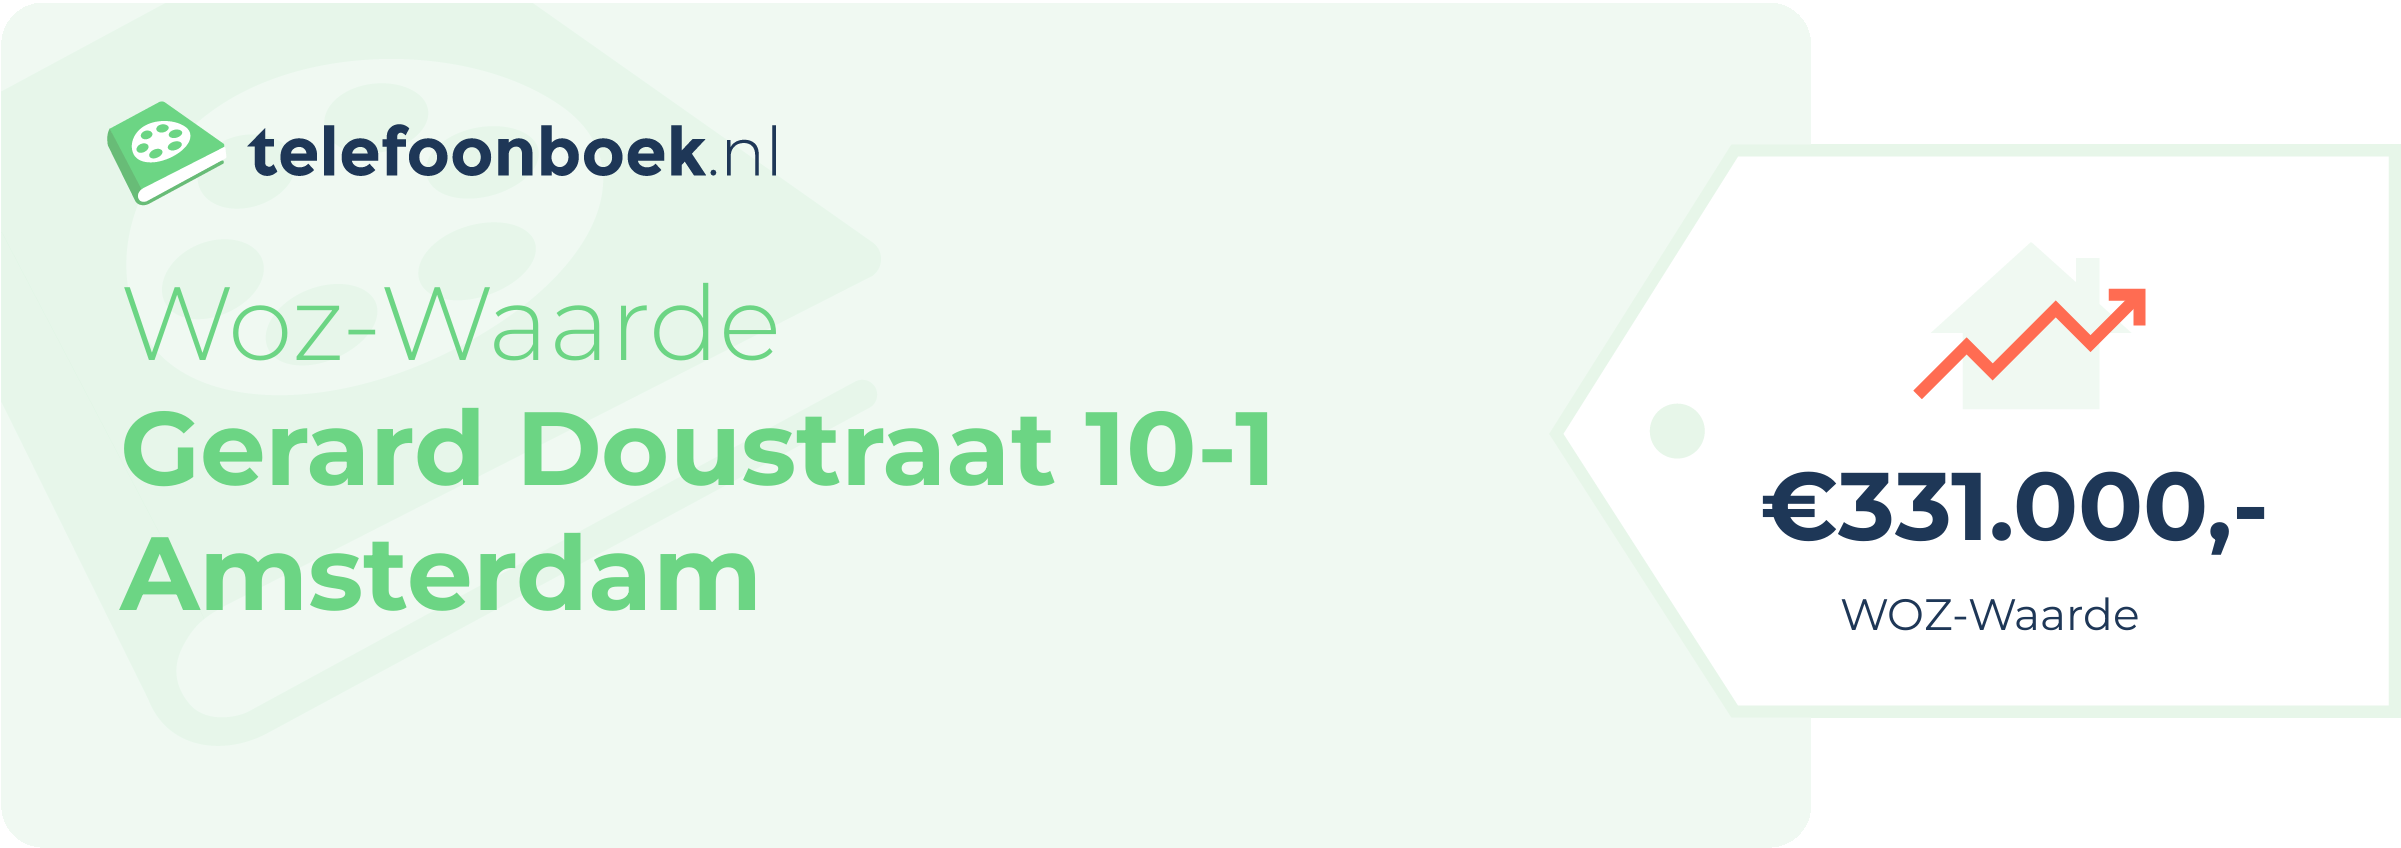 WOZ-waarde Gerard Doustraat 10-1 Amsterdam